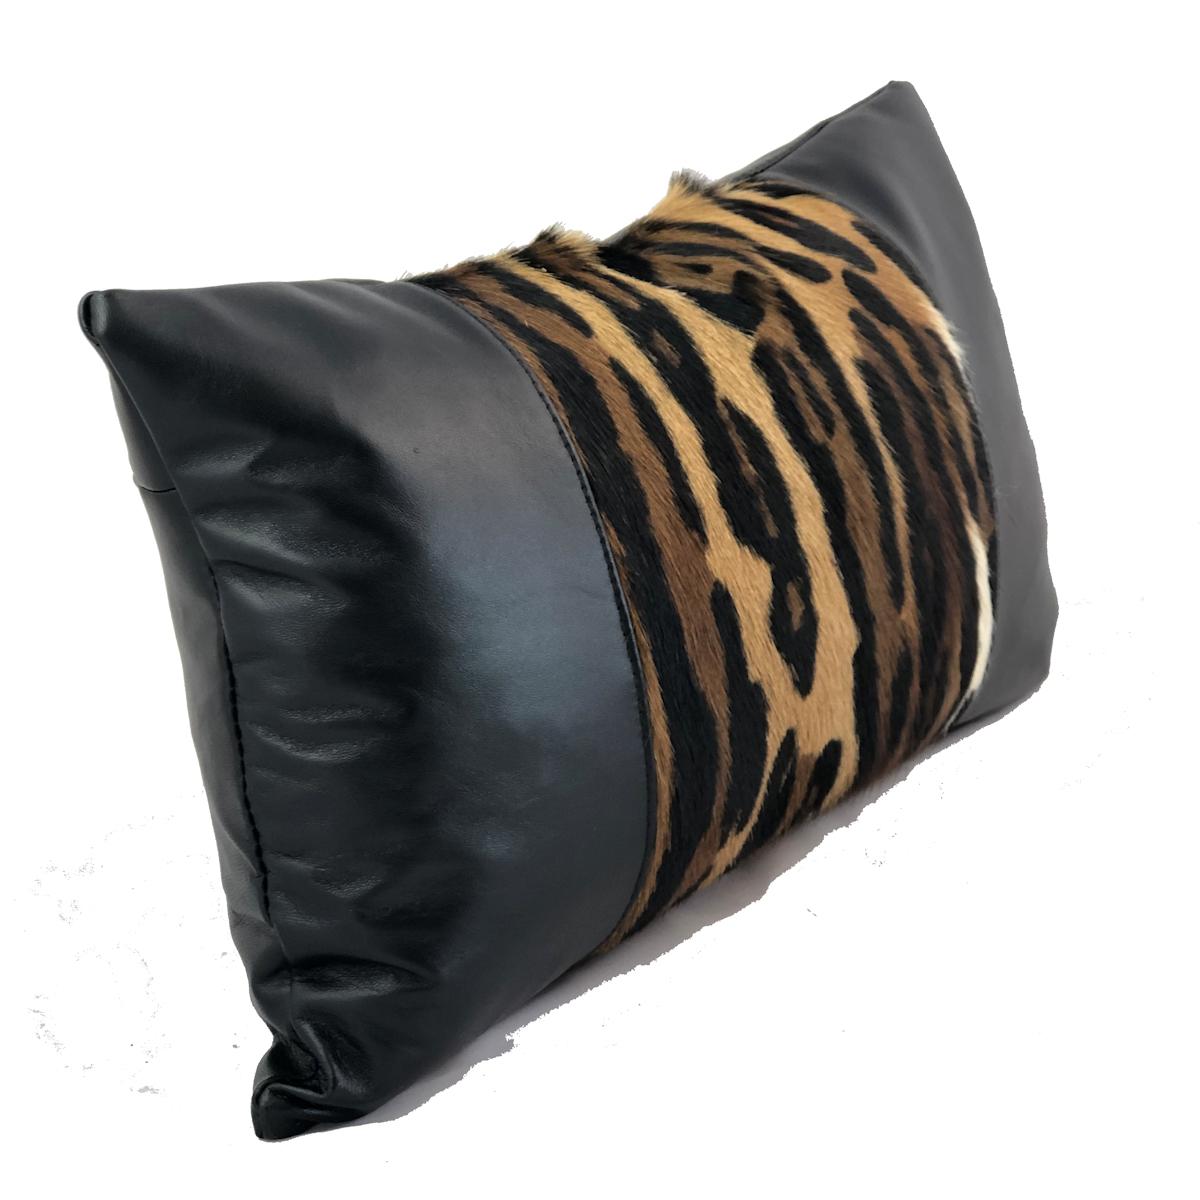 C'est la saison des imprimés léopard exotiques et sauvages, alors libérez votre intérieur avec ce coussin lombaire à imprimé léopard ostentatoire. Un magnifique imprimé, sérigraphié sur une fourrure de springbok africain, qui capture les incroyables